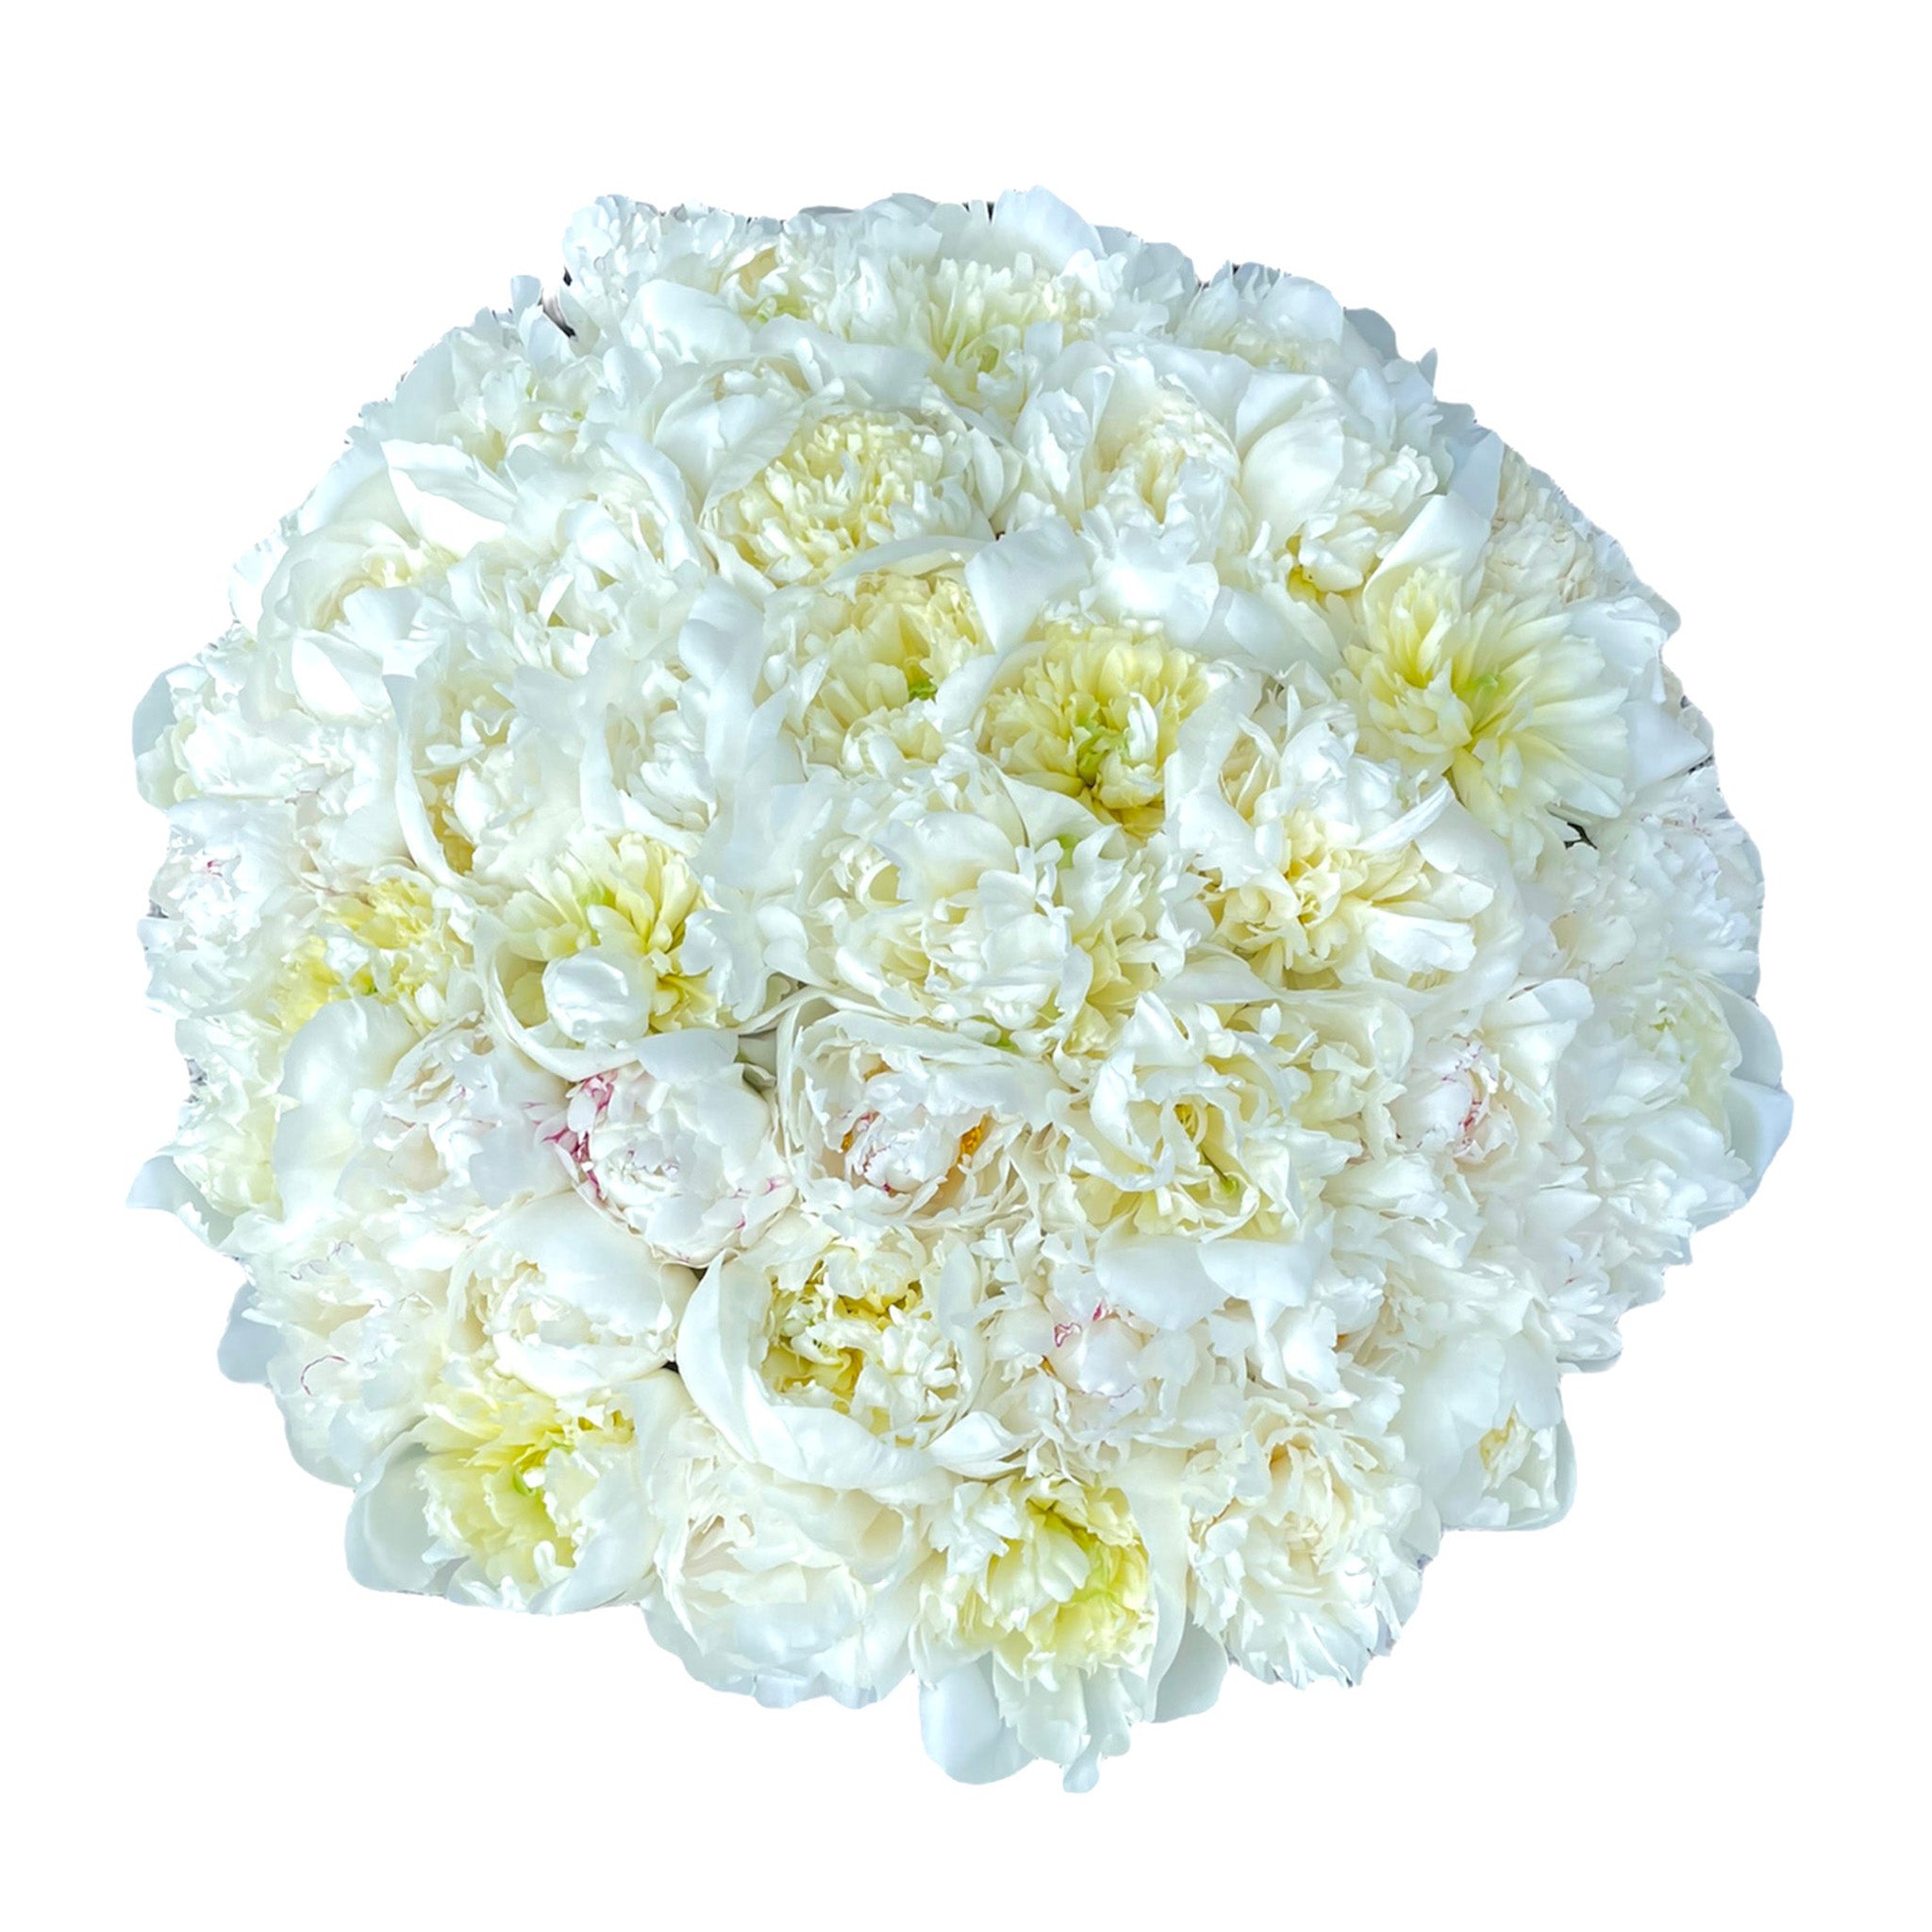 Heaven on earth - Buchet de Bujori albe parfumate in cutie luxury